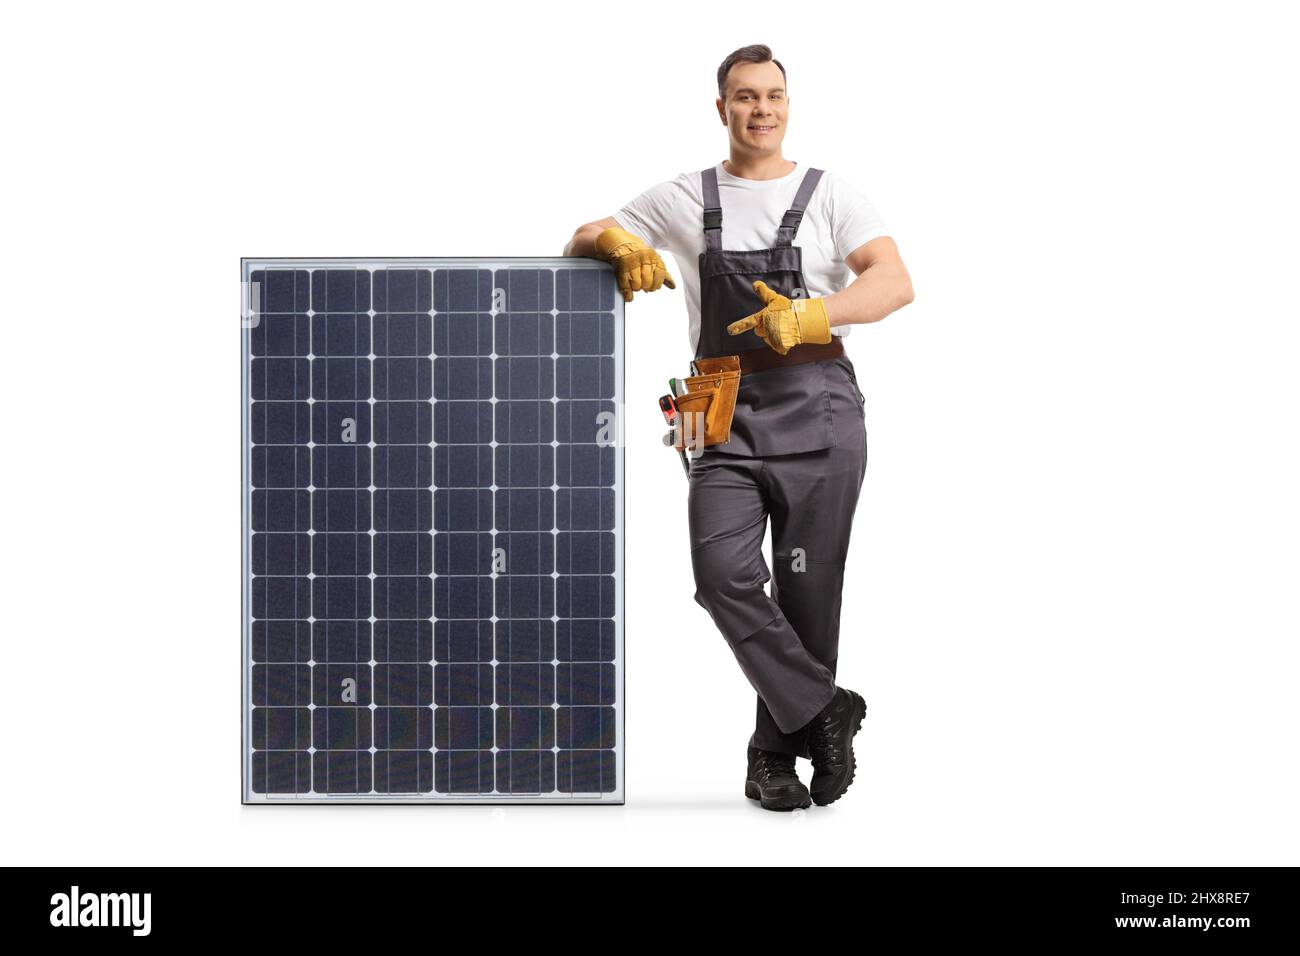 Uomo in uniforme appoggiandosi su un modulo fotovoltaico per l'energia solare sostenibile e puntando isolato su sfondo bianco Foto Stock